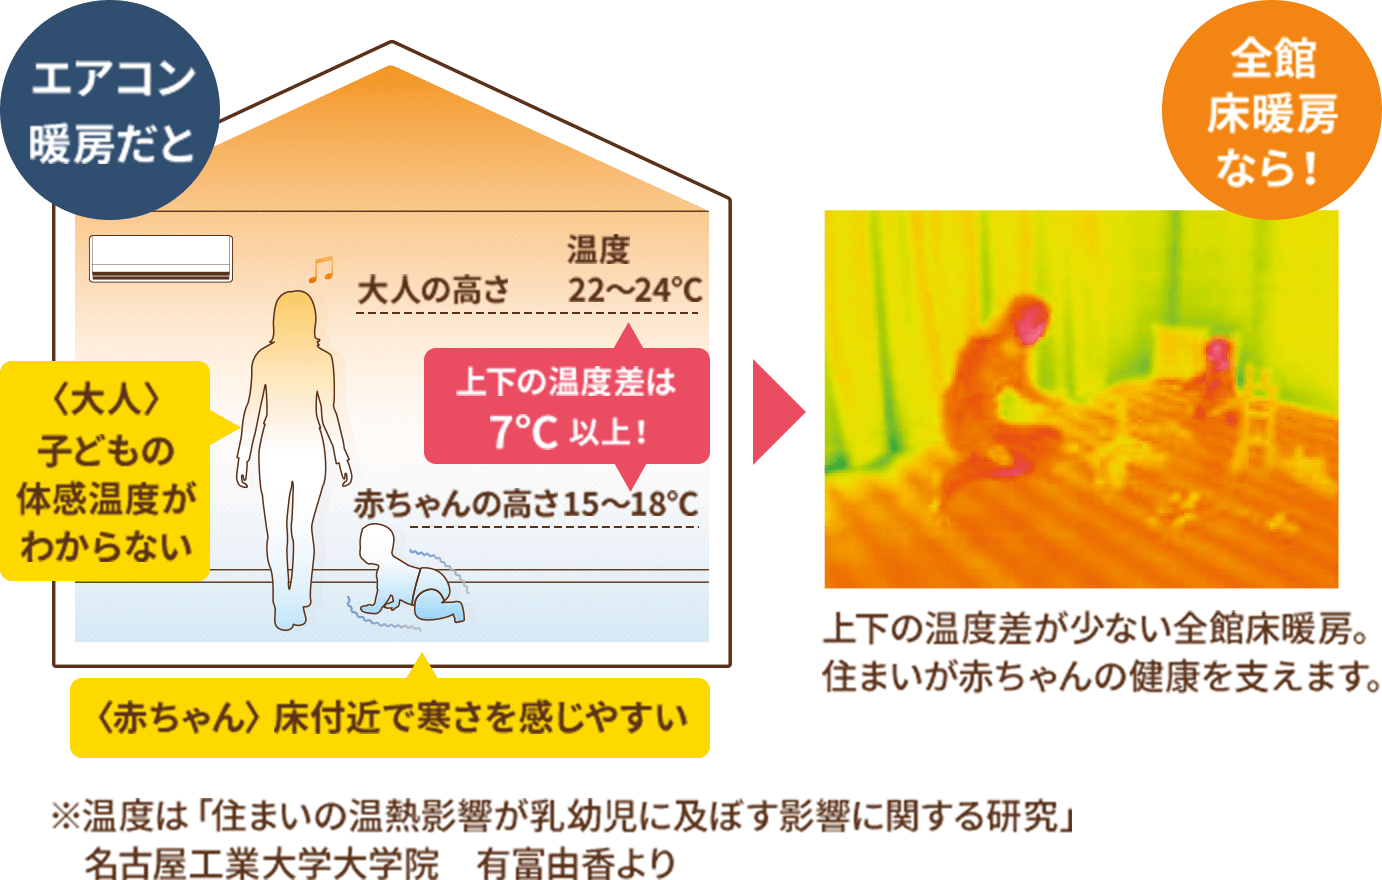 エアコン暖房だと：〈大人〉子どもの体感温度がわからない〈赤ちゃん〉床付近で寒さを感じやすい　全館床暖房なら！上下の温度差が少ない全館床暖房。住まいが赤ちゃんの健康を支えます。